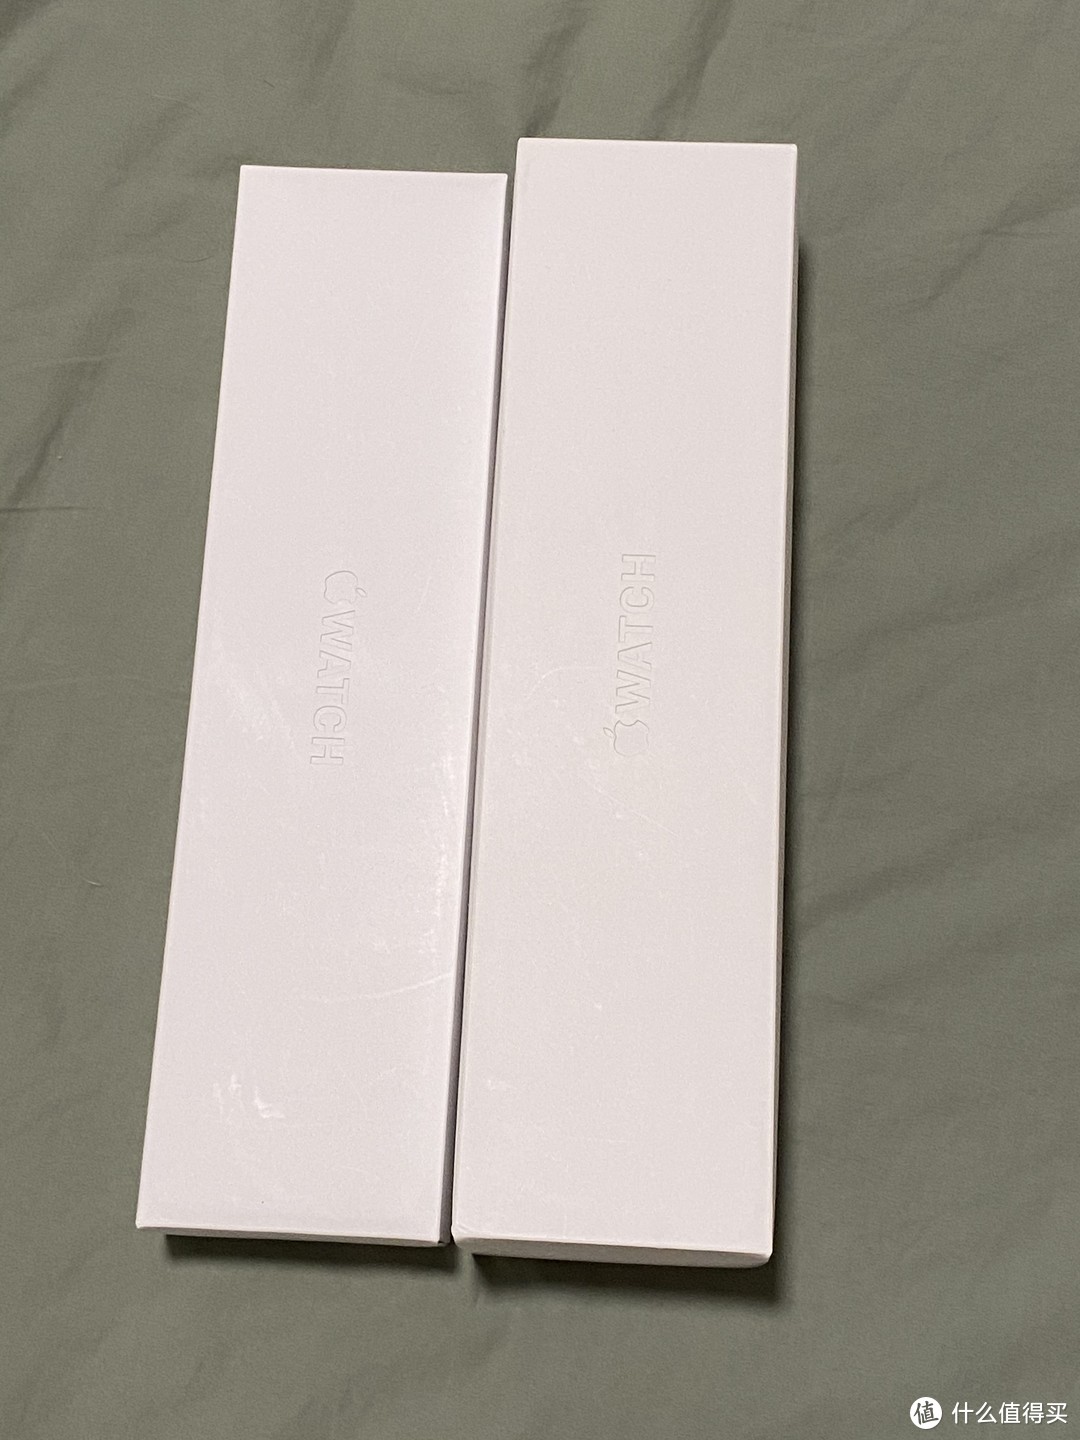 终于等到你-apple watch series 6 银色不锈钢 开箱速评 多图杀猫